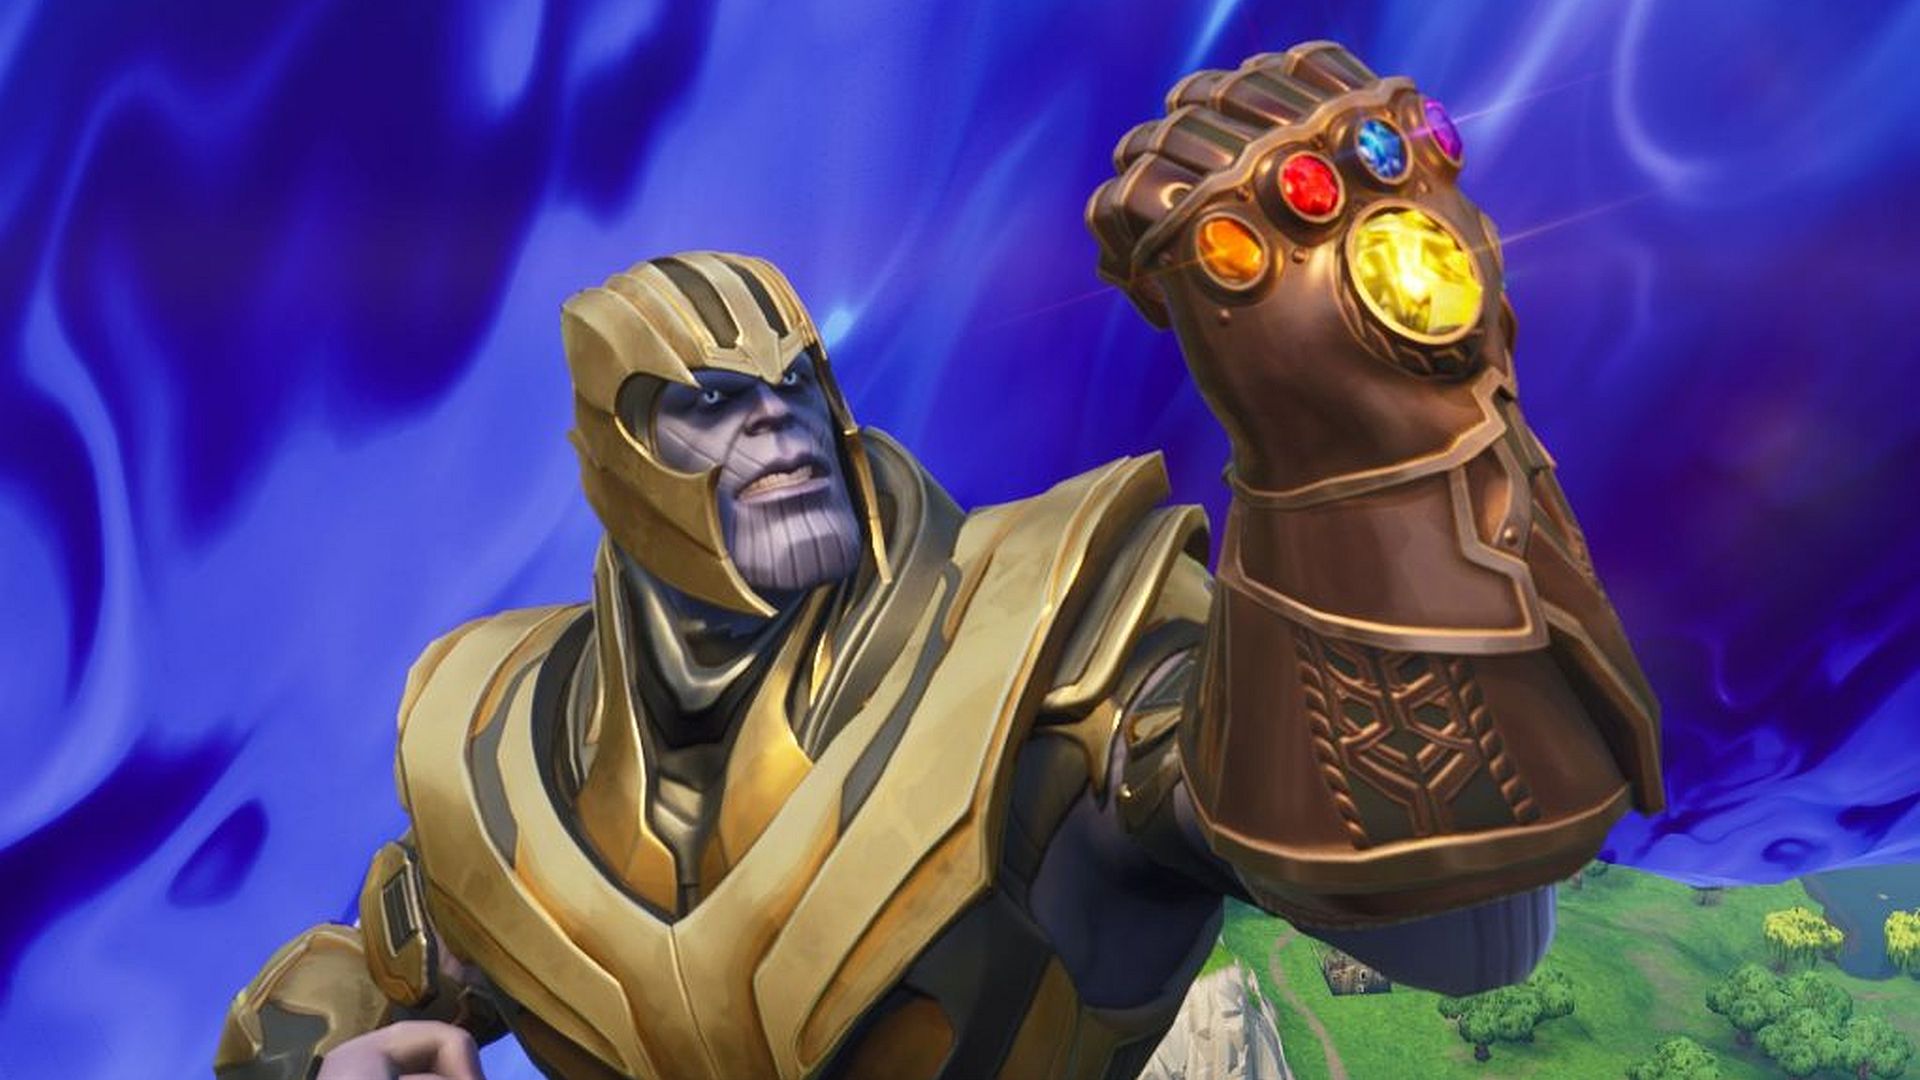 Fortnite Thanos Ltm Leaked Ahead Of Avengers Endgame Release Pcgamesn